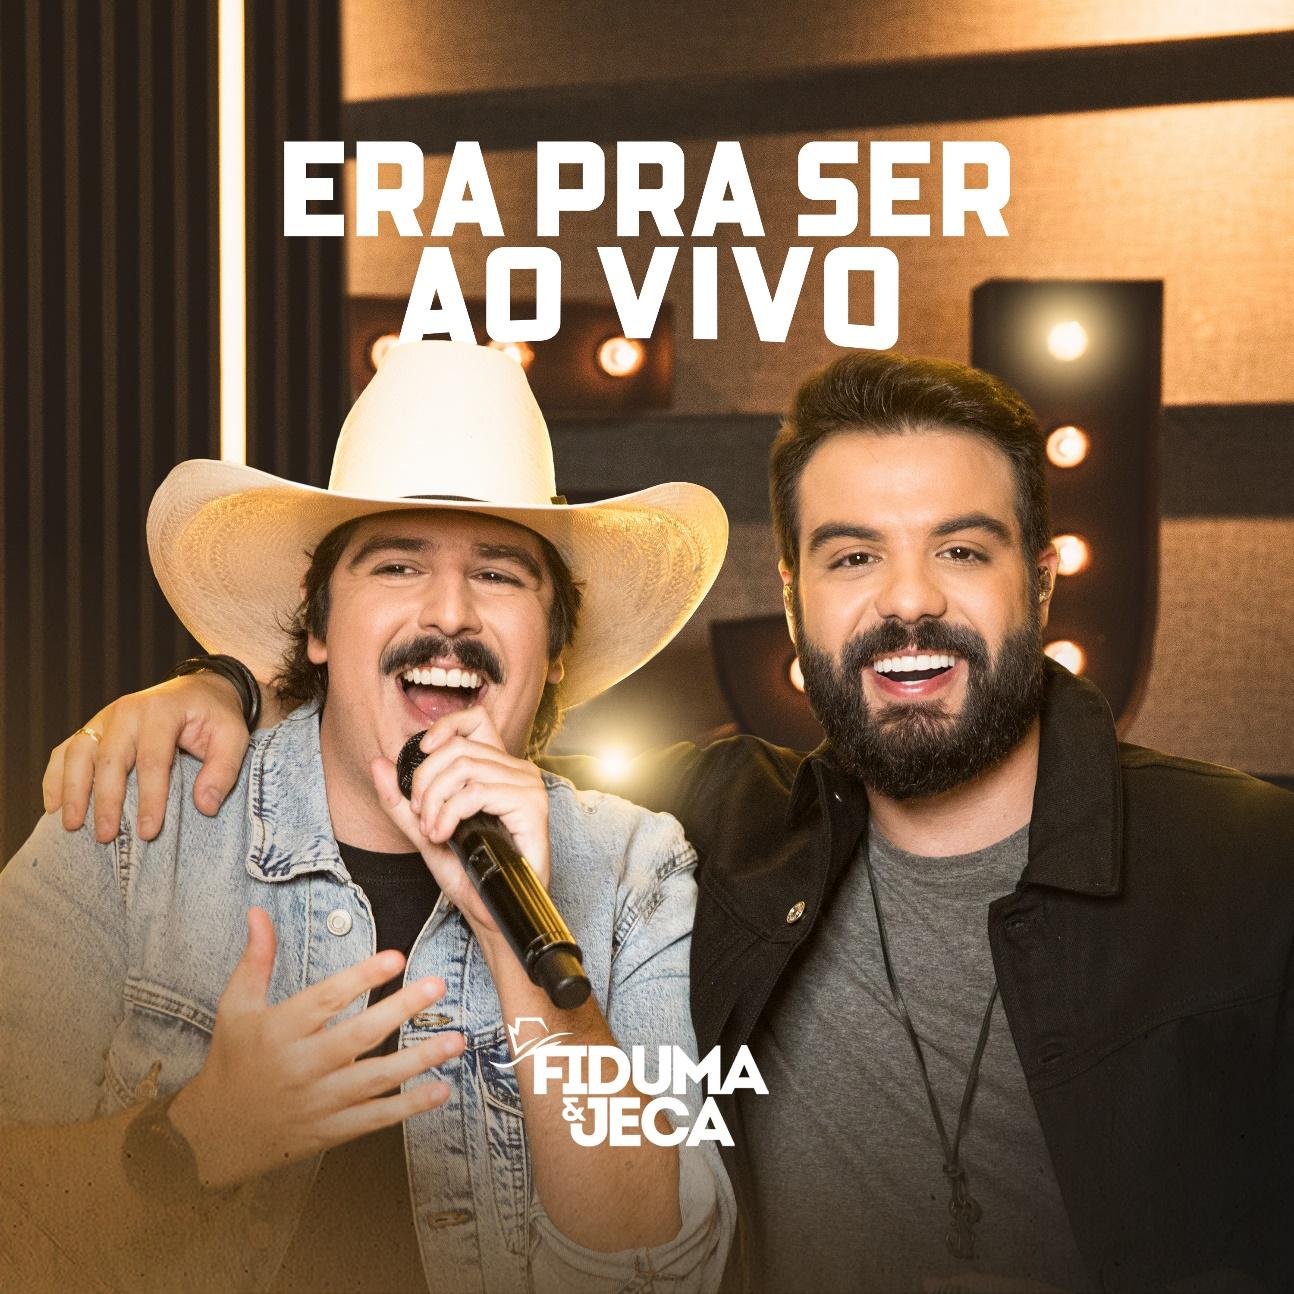 Fiduma & Jeca liberam EP completo de "Era Pra Ser Ao Vivo" com faixa bônus tocada no piano 42